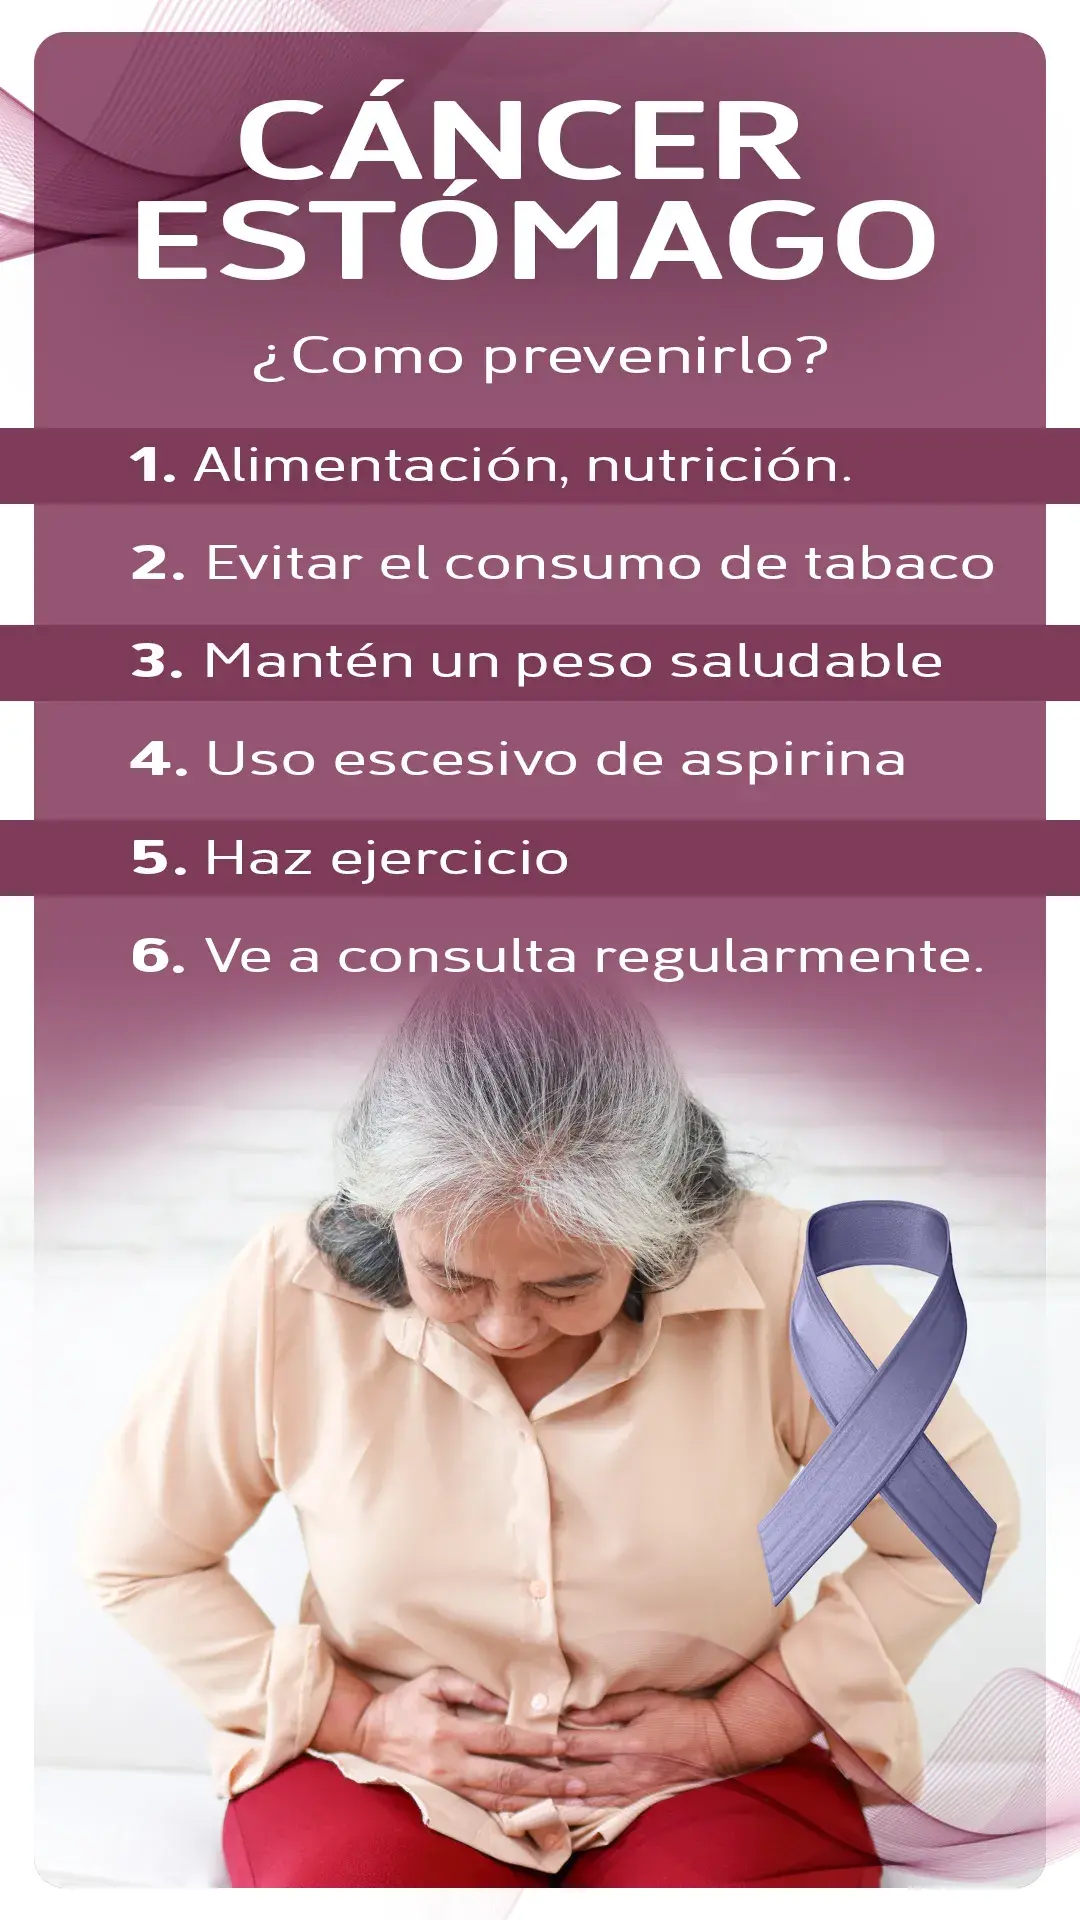 Prevención del cáncer de estómago (alimentación, no consumir tabaco, peso saludable, no uso de aspirina, ejercicio, consulta regular)